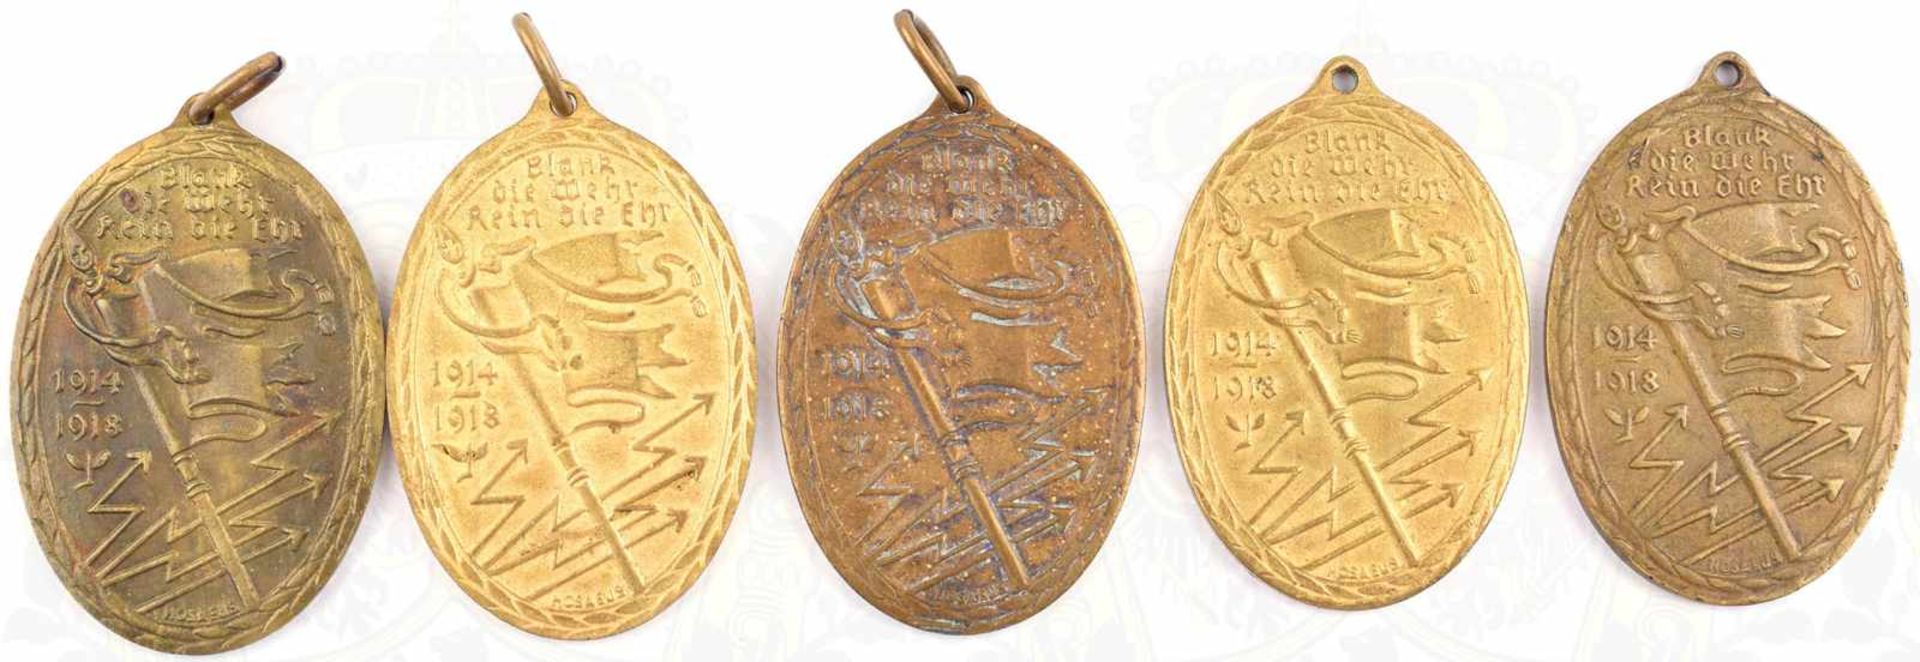 5 KYFFHÄUSER-DENKMÜNZEN 1914-1918, Bronze, Vergld. tls. vergangen, Bänder u. 2 Bandringösen fehlen